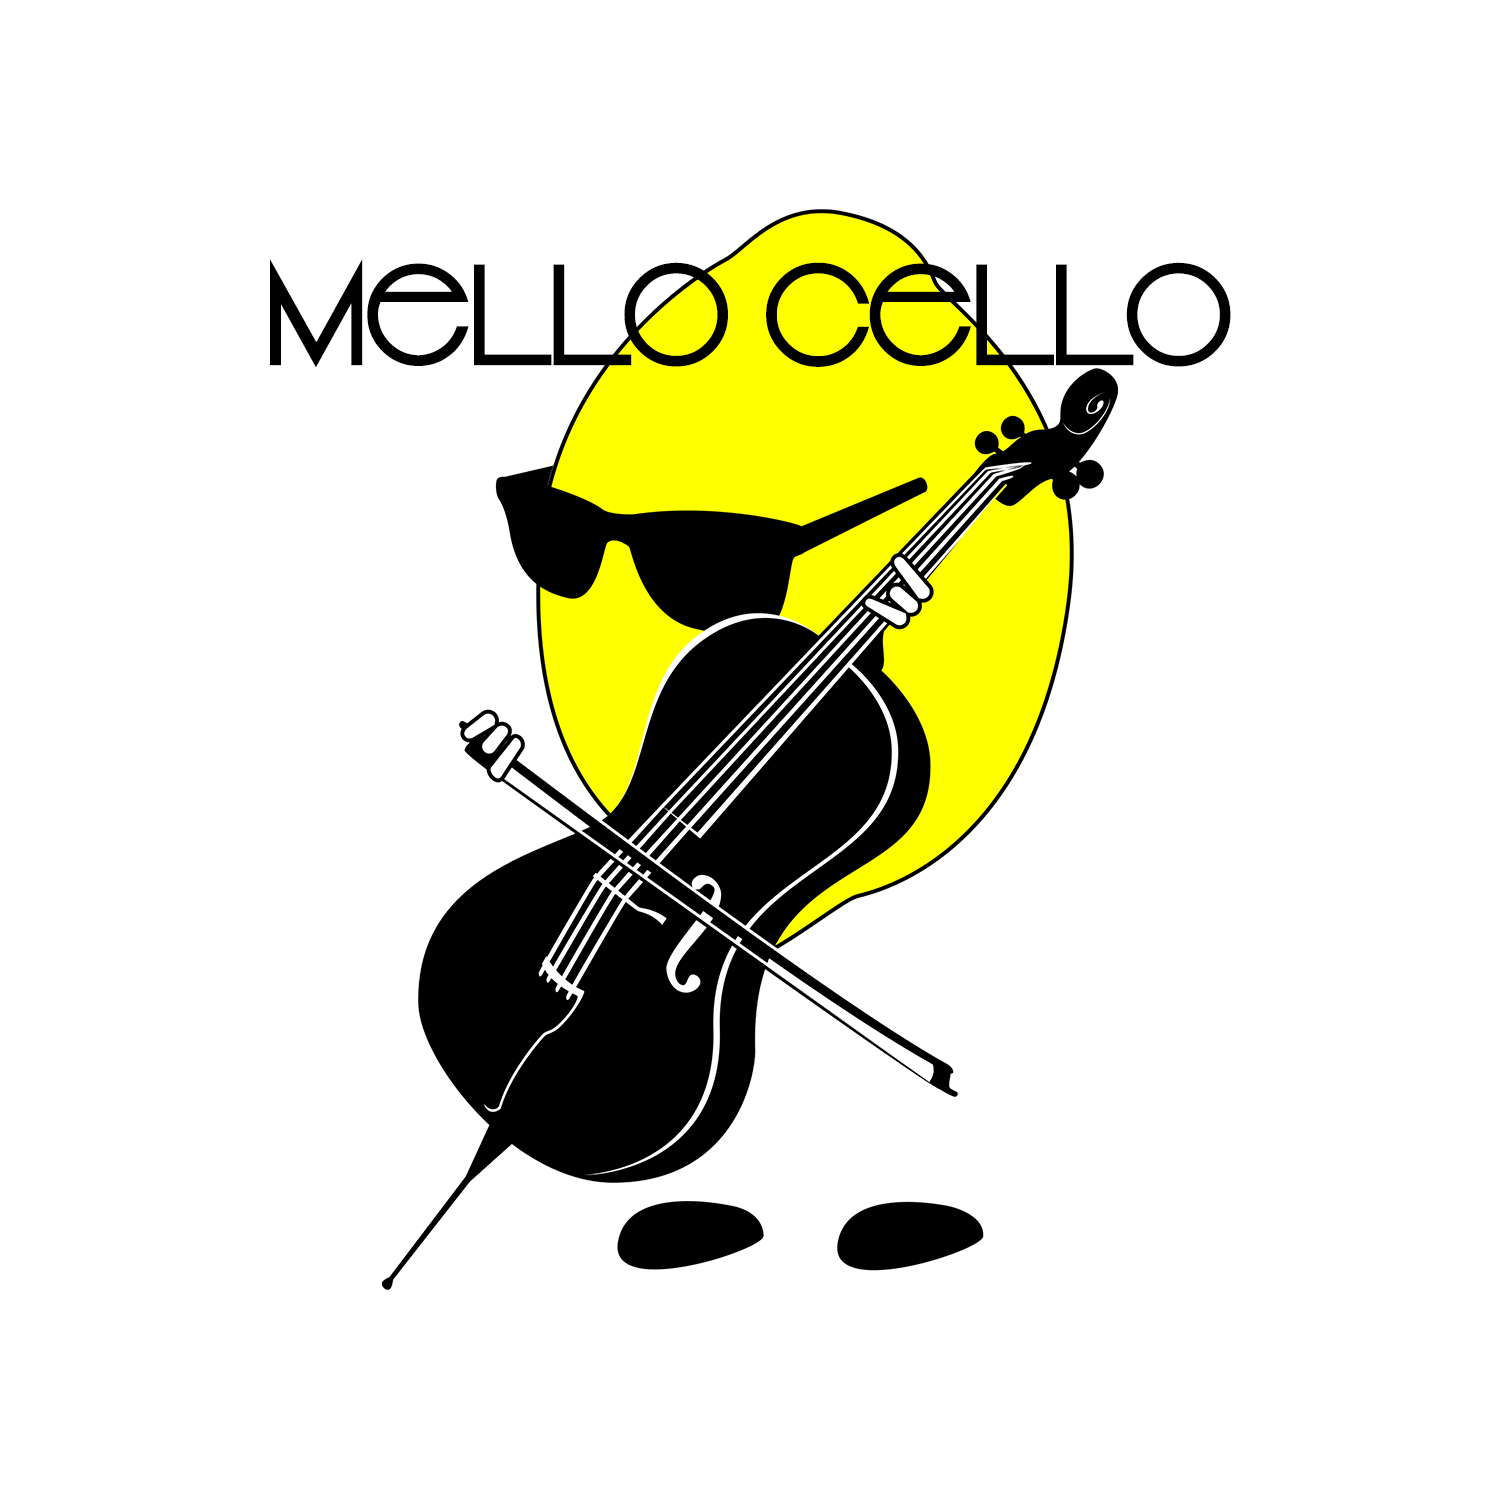 Mello Cello